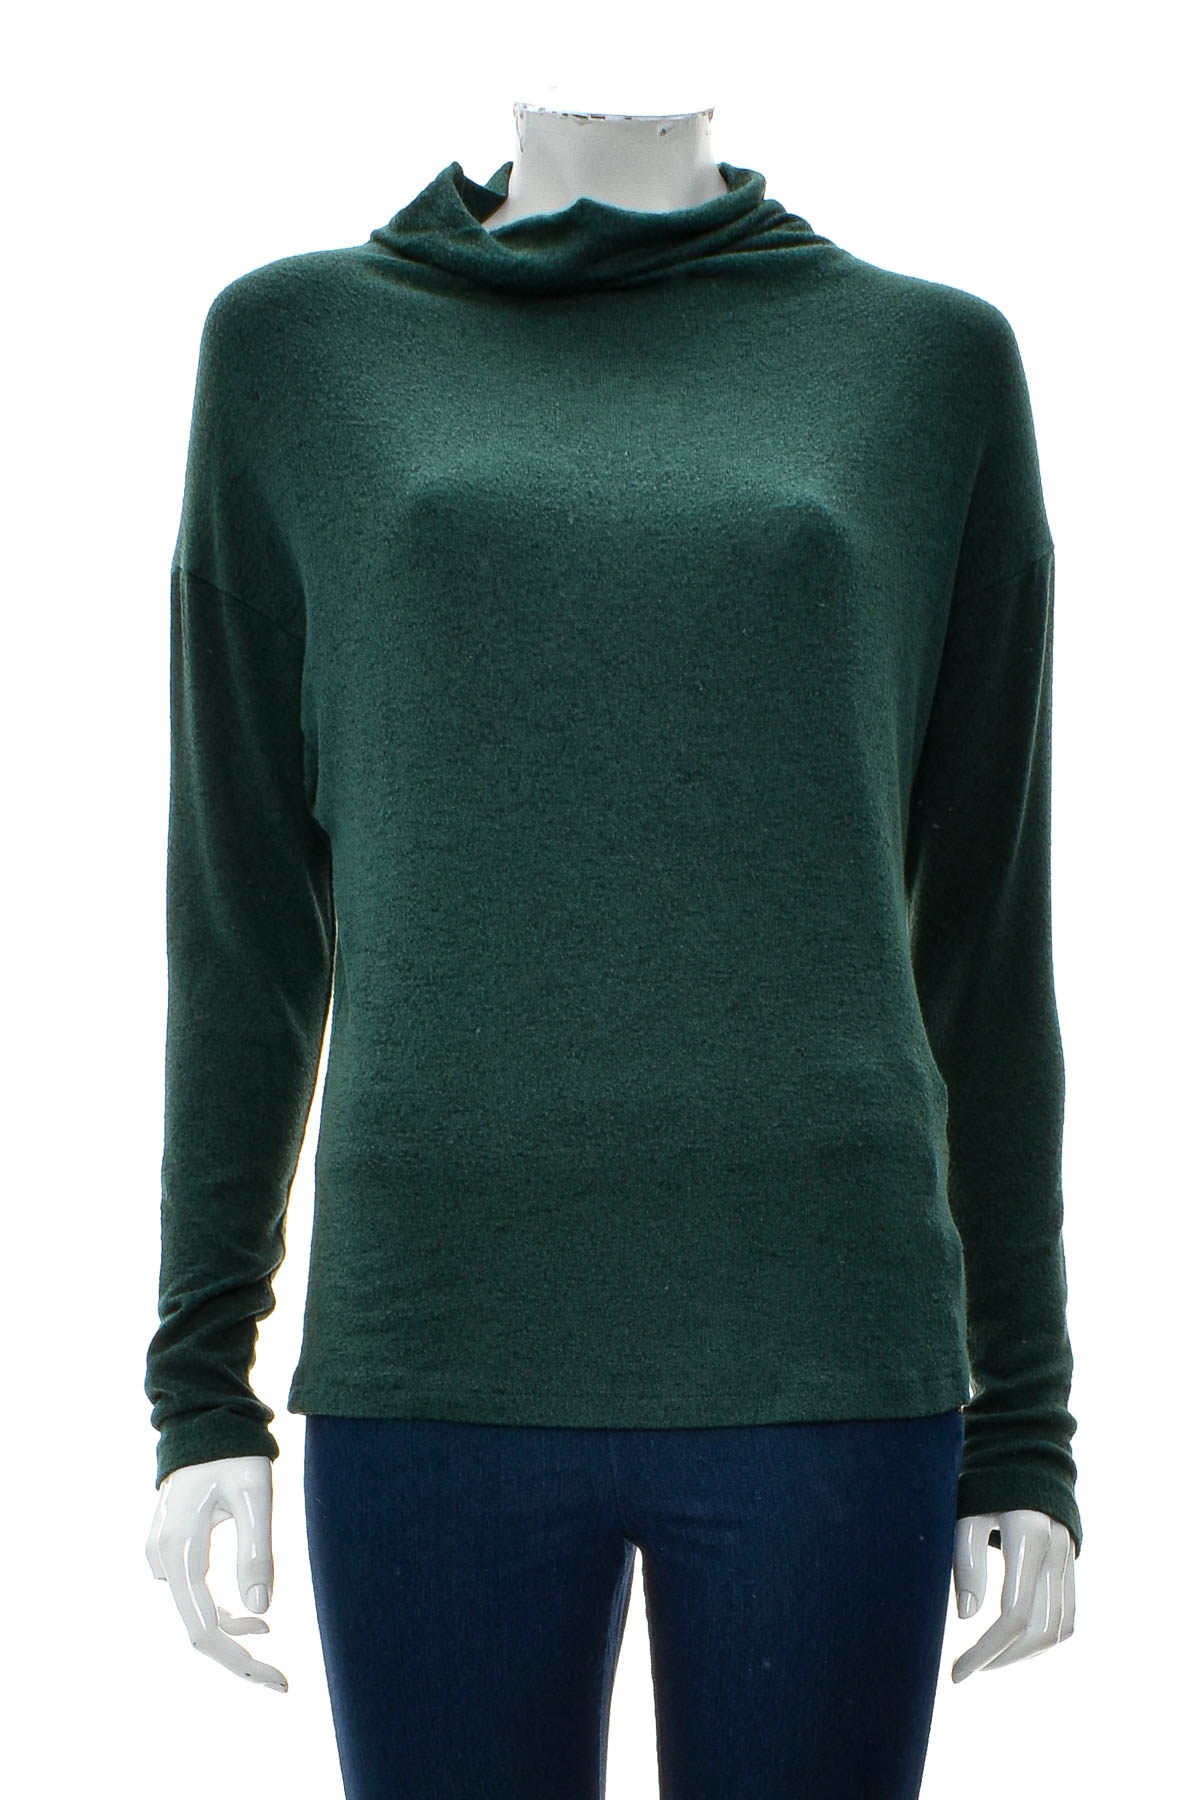 Women's sweater - Market & Spruce - 0